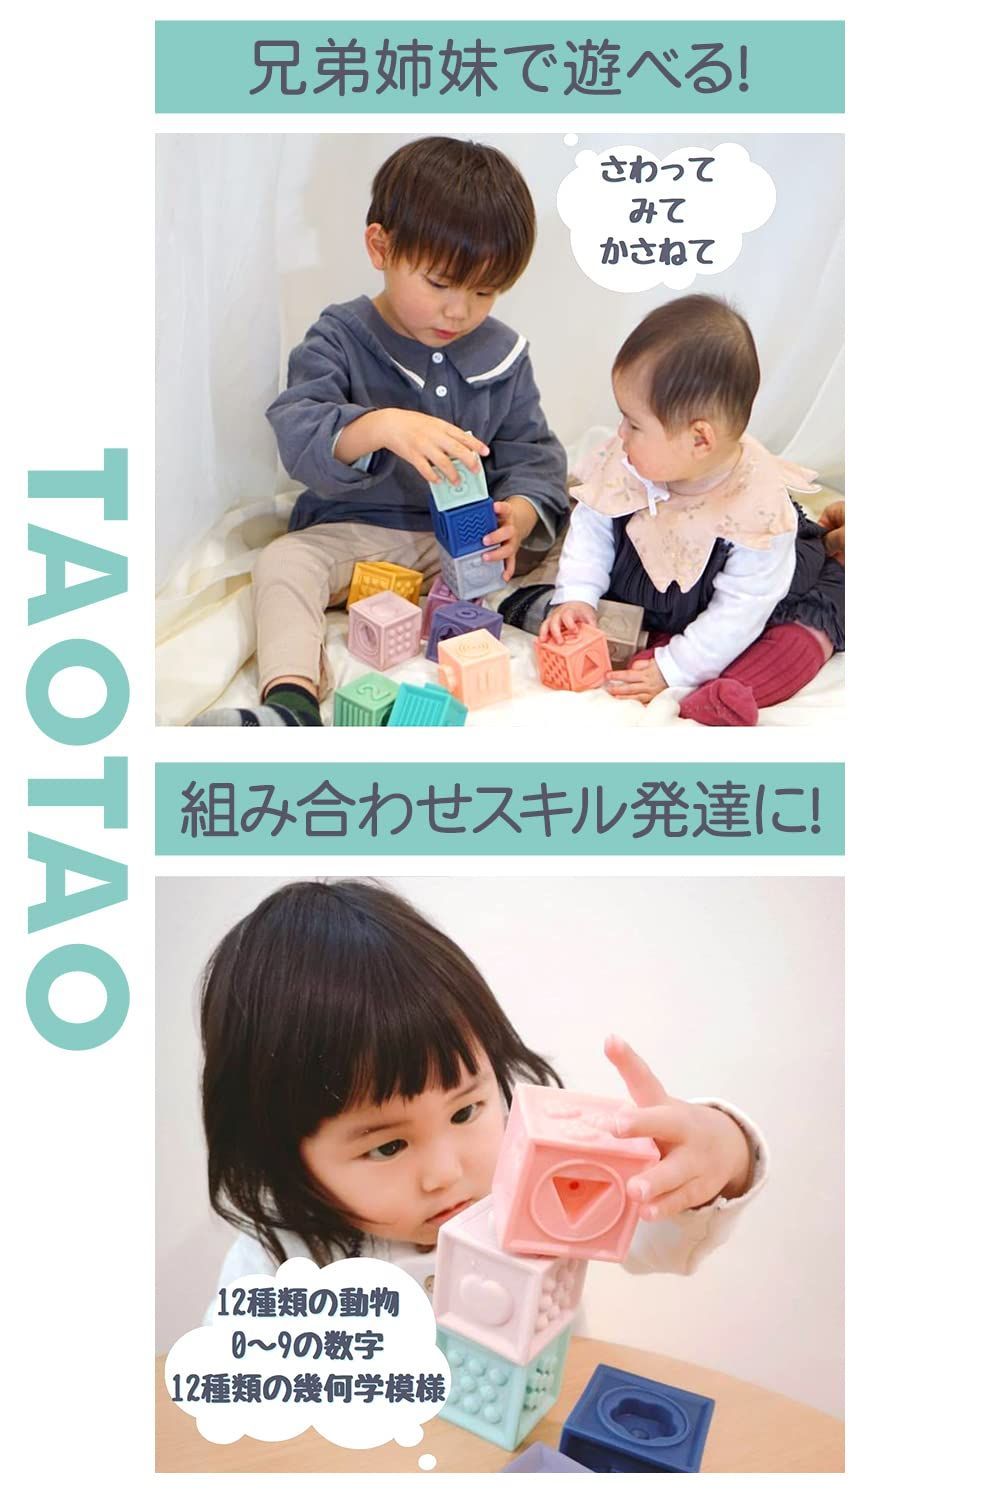 お得定番 TAOTAO 積み木 みて・さわって・たのしい パステルキューブ 赤ちゃん おも 4975.05円 おもちゃ 